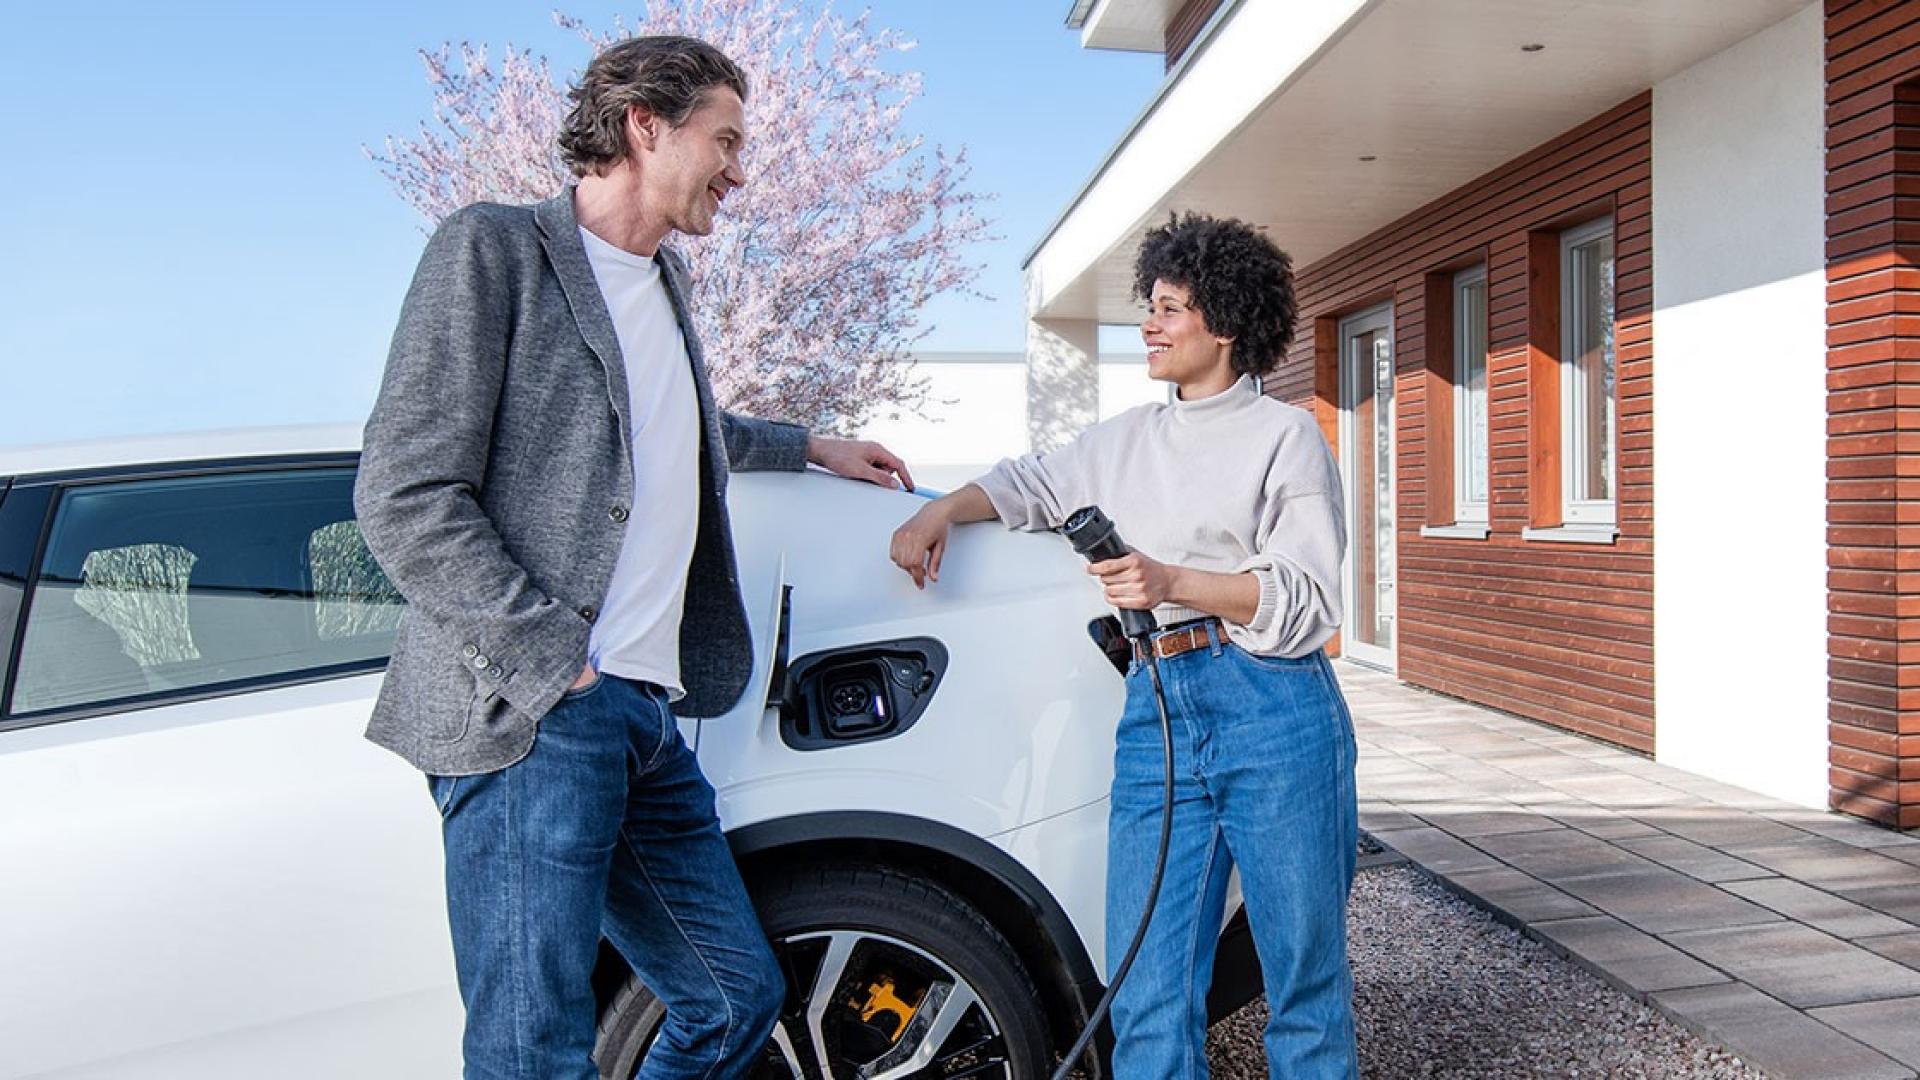 Das Bild zeigt eine Frau, die sich mit einem Mann unterhält und gerade ihr Elektroauto auflädt.